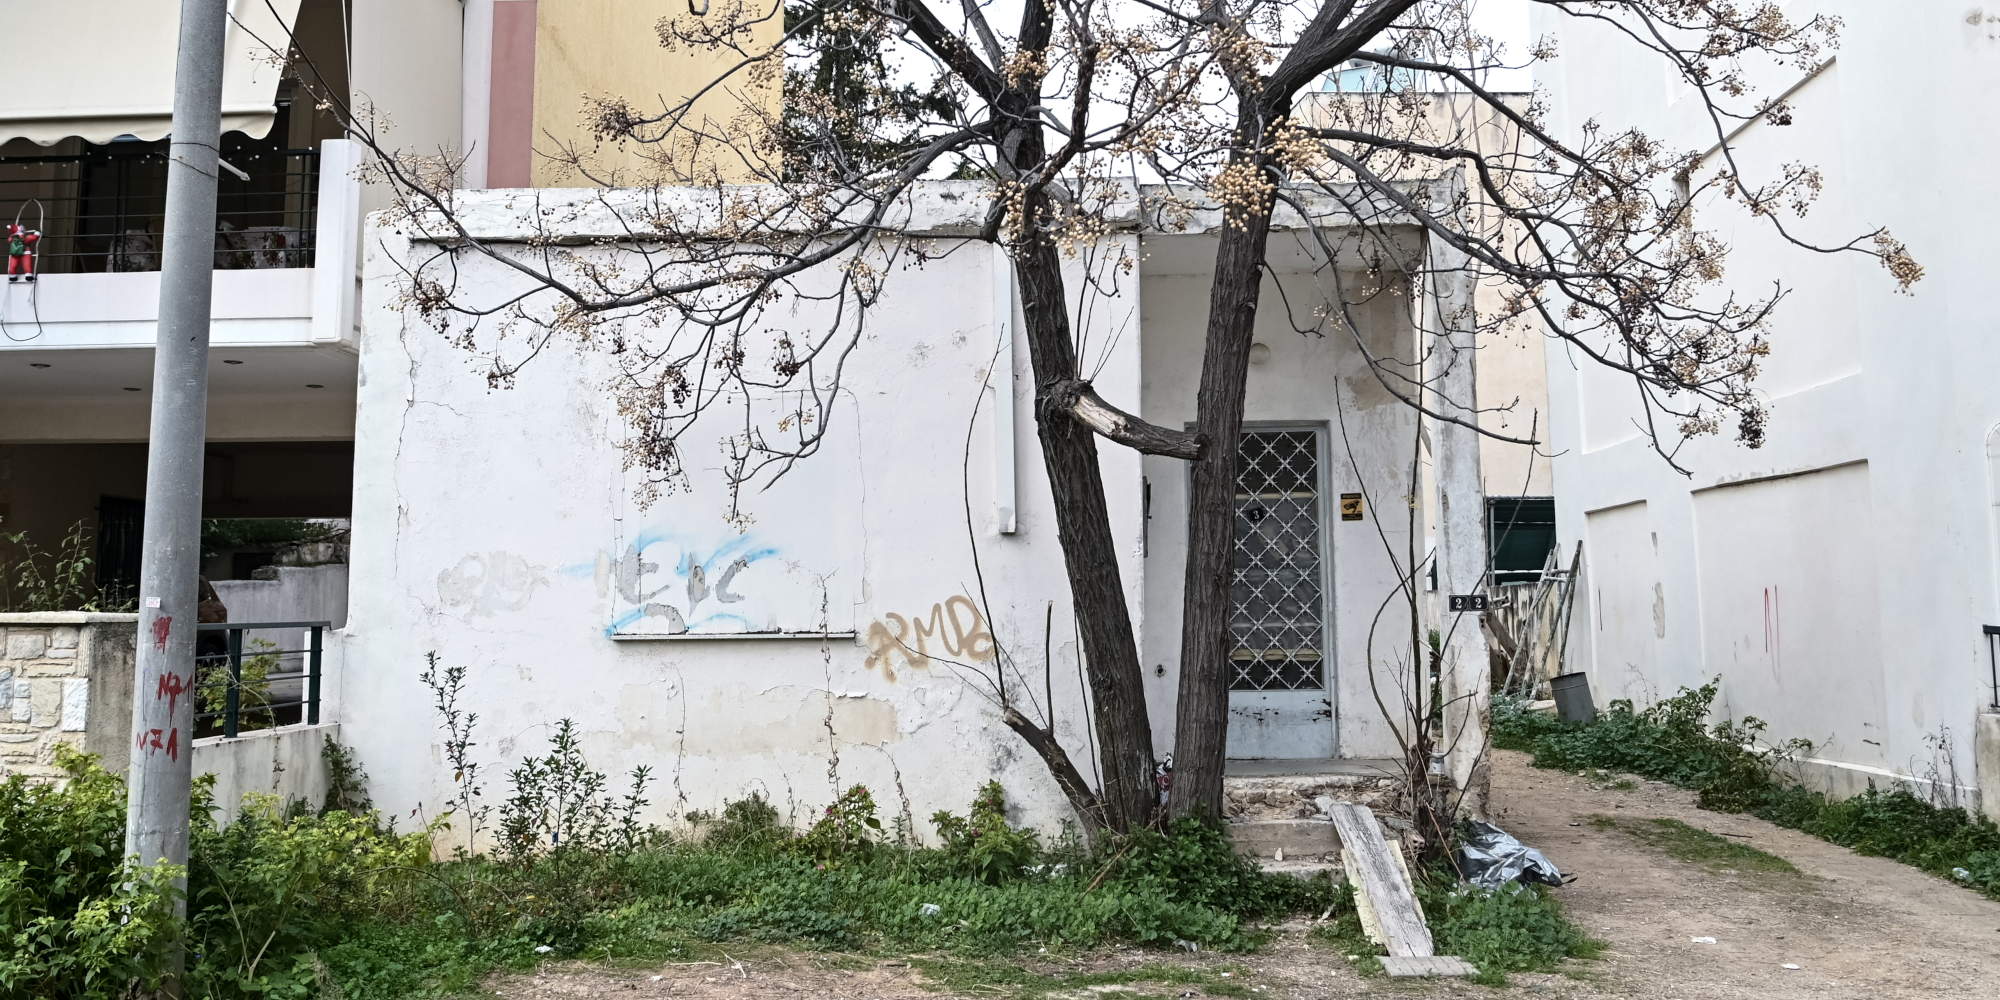 Το σπίτι που βρίσκεται στο επίκεντρο για την υπόθεση βιασμού 15χρονου στο Ίλιον